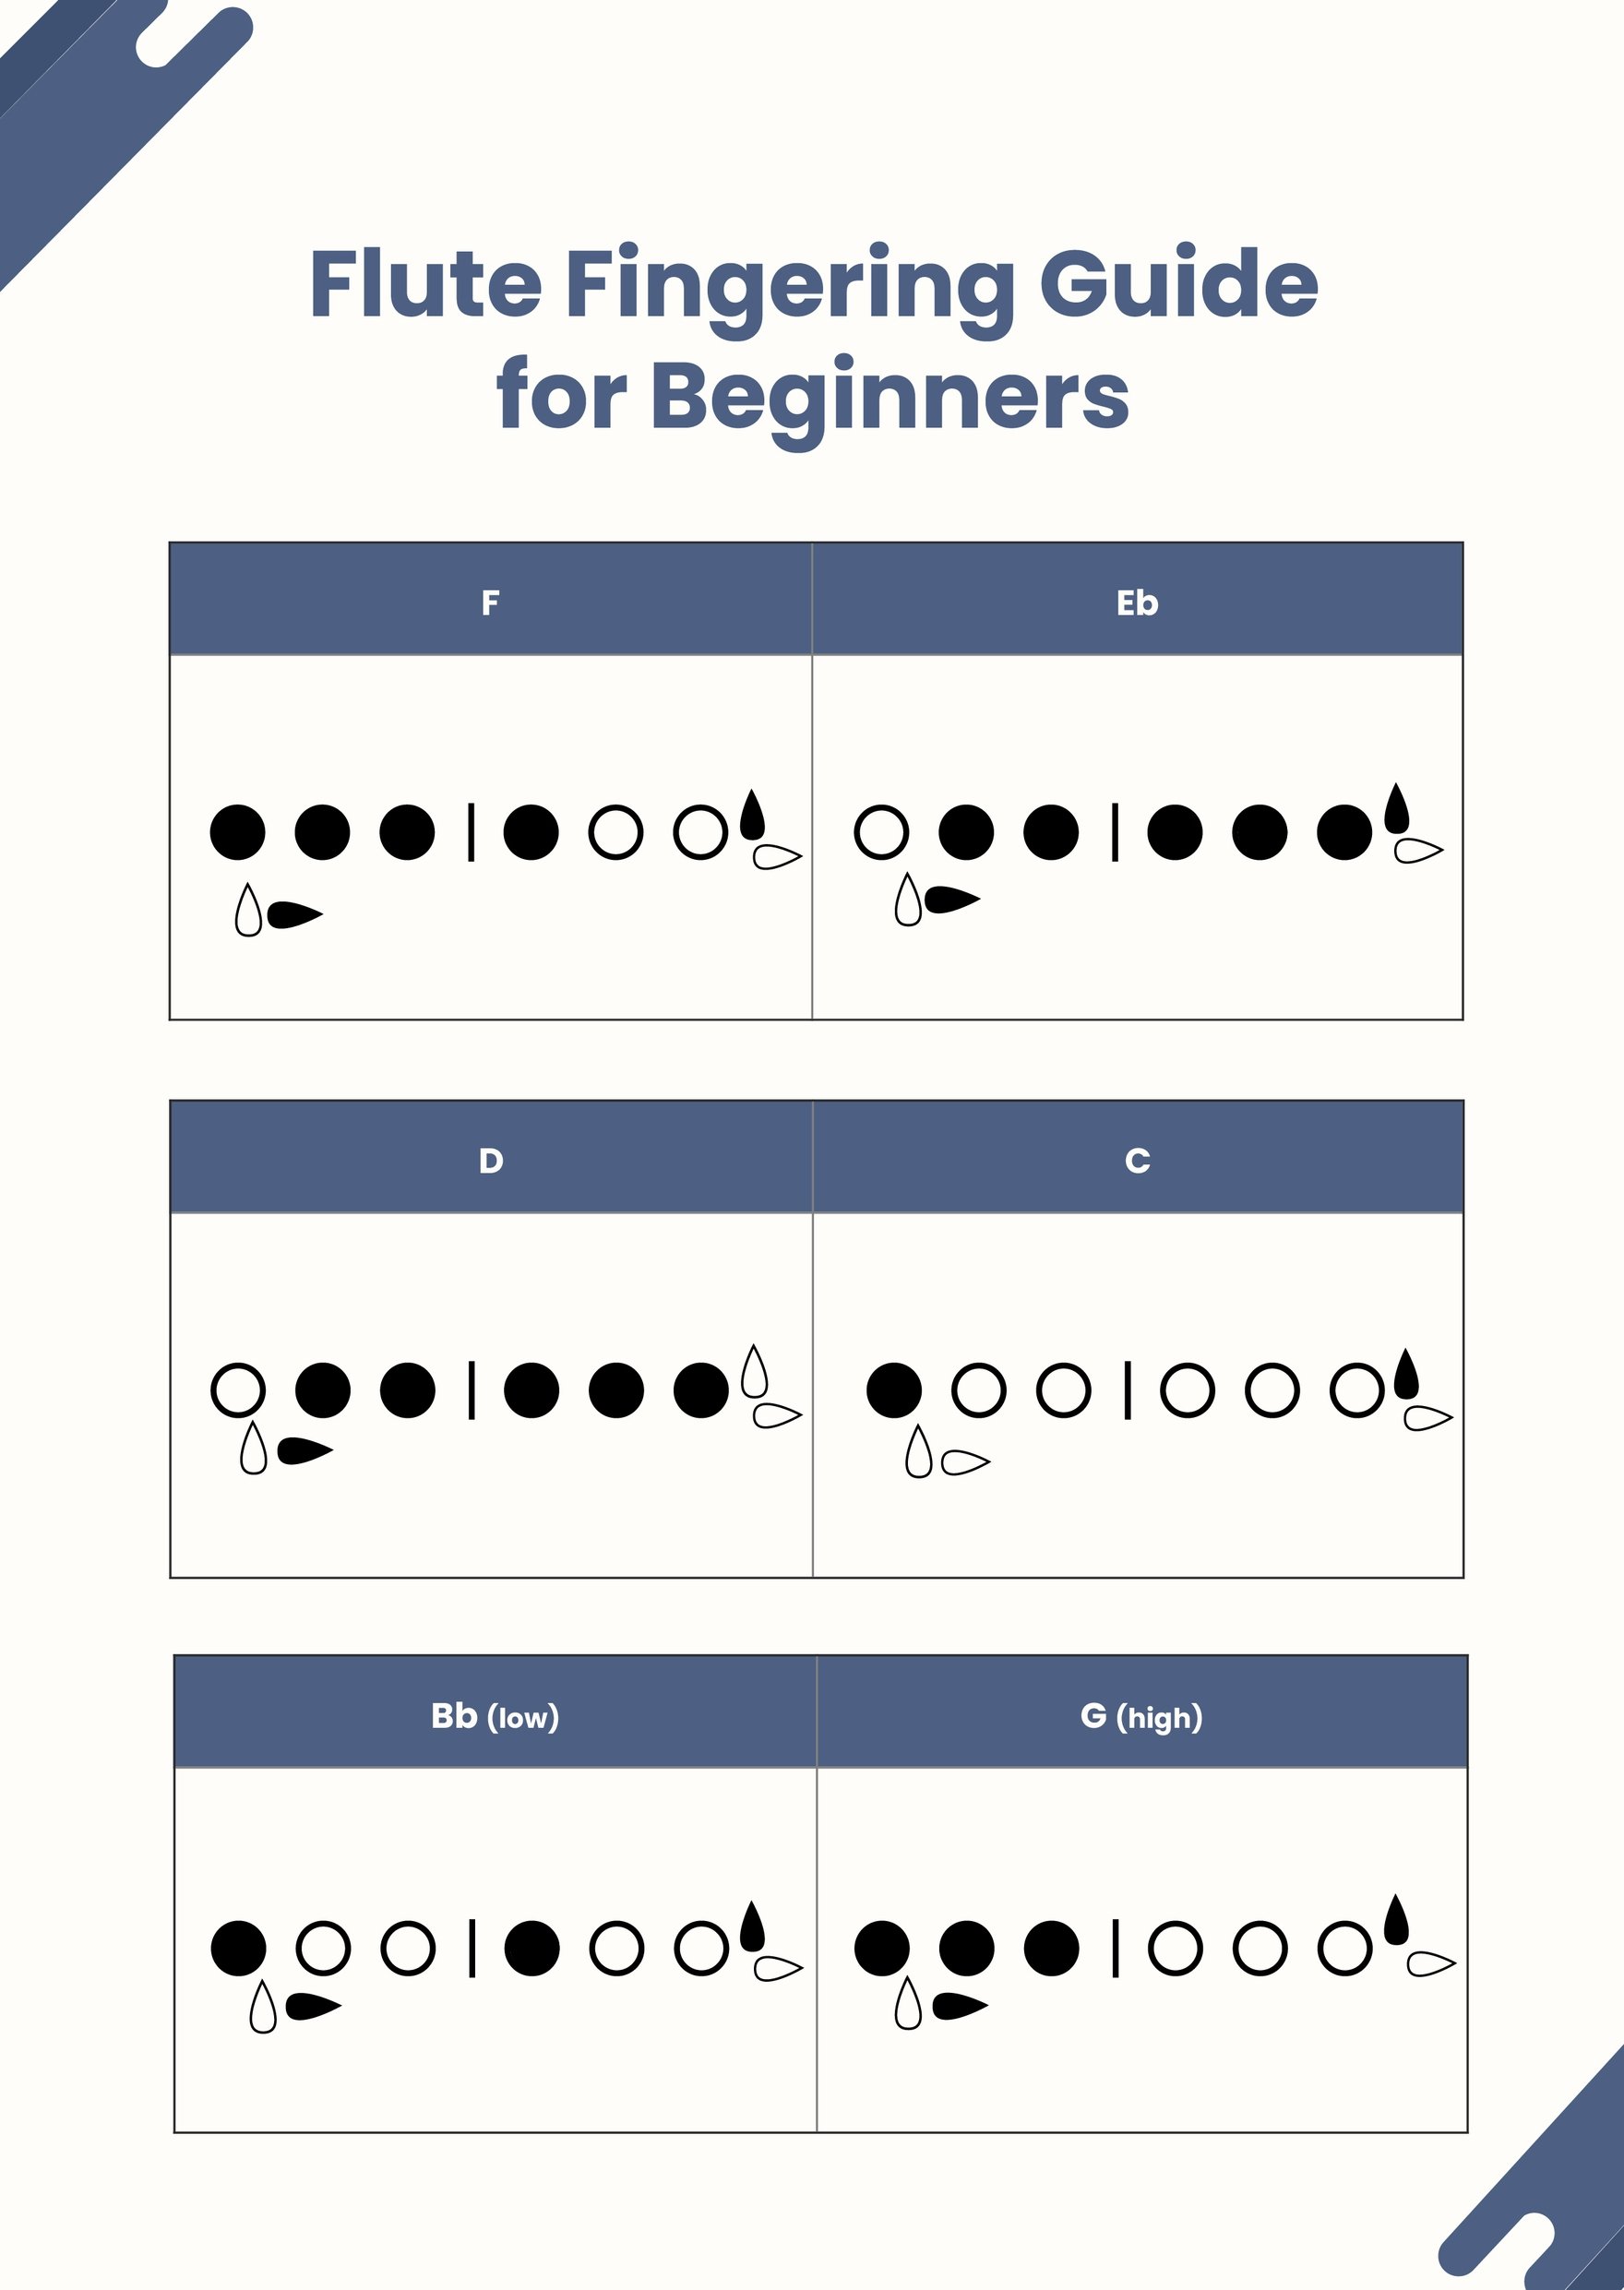 Flute Fingering Chart in PDF, Illustrator